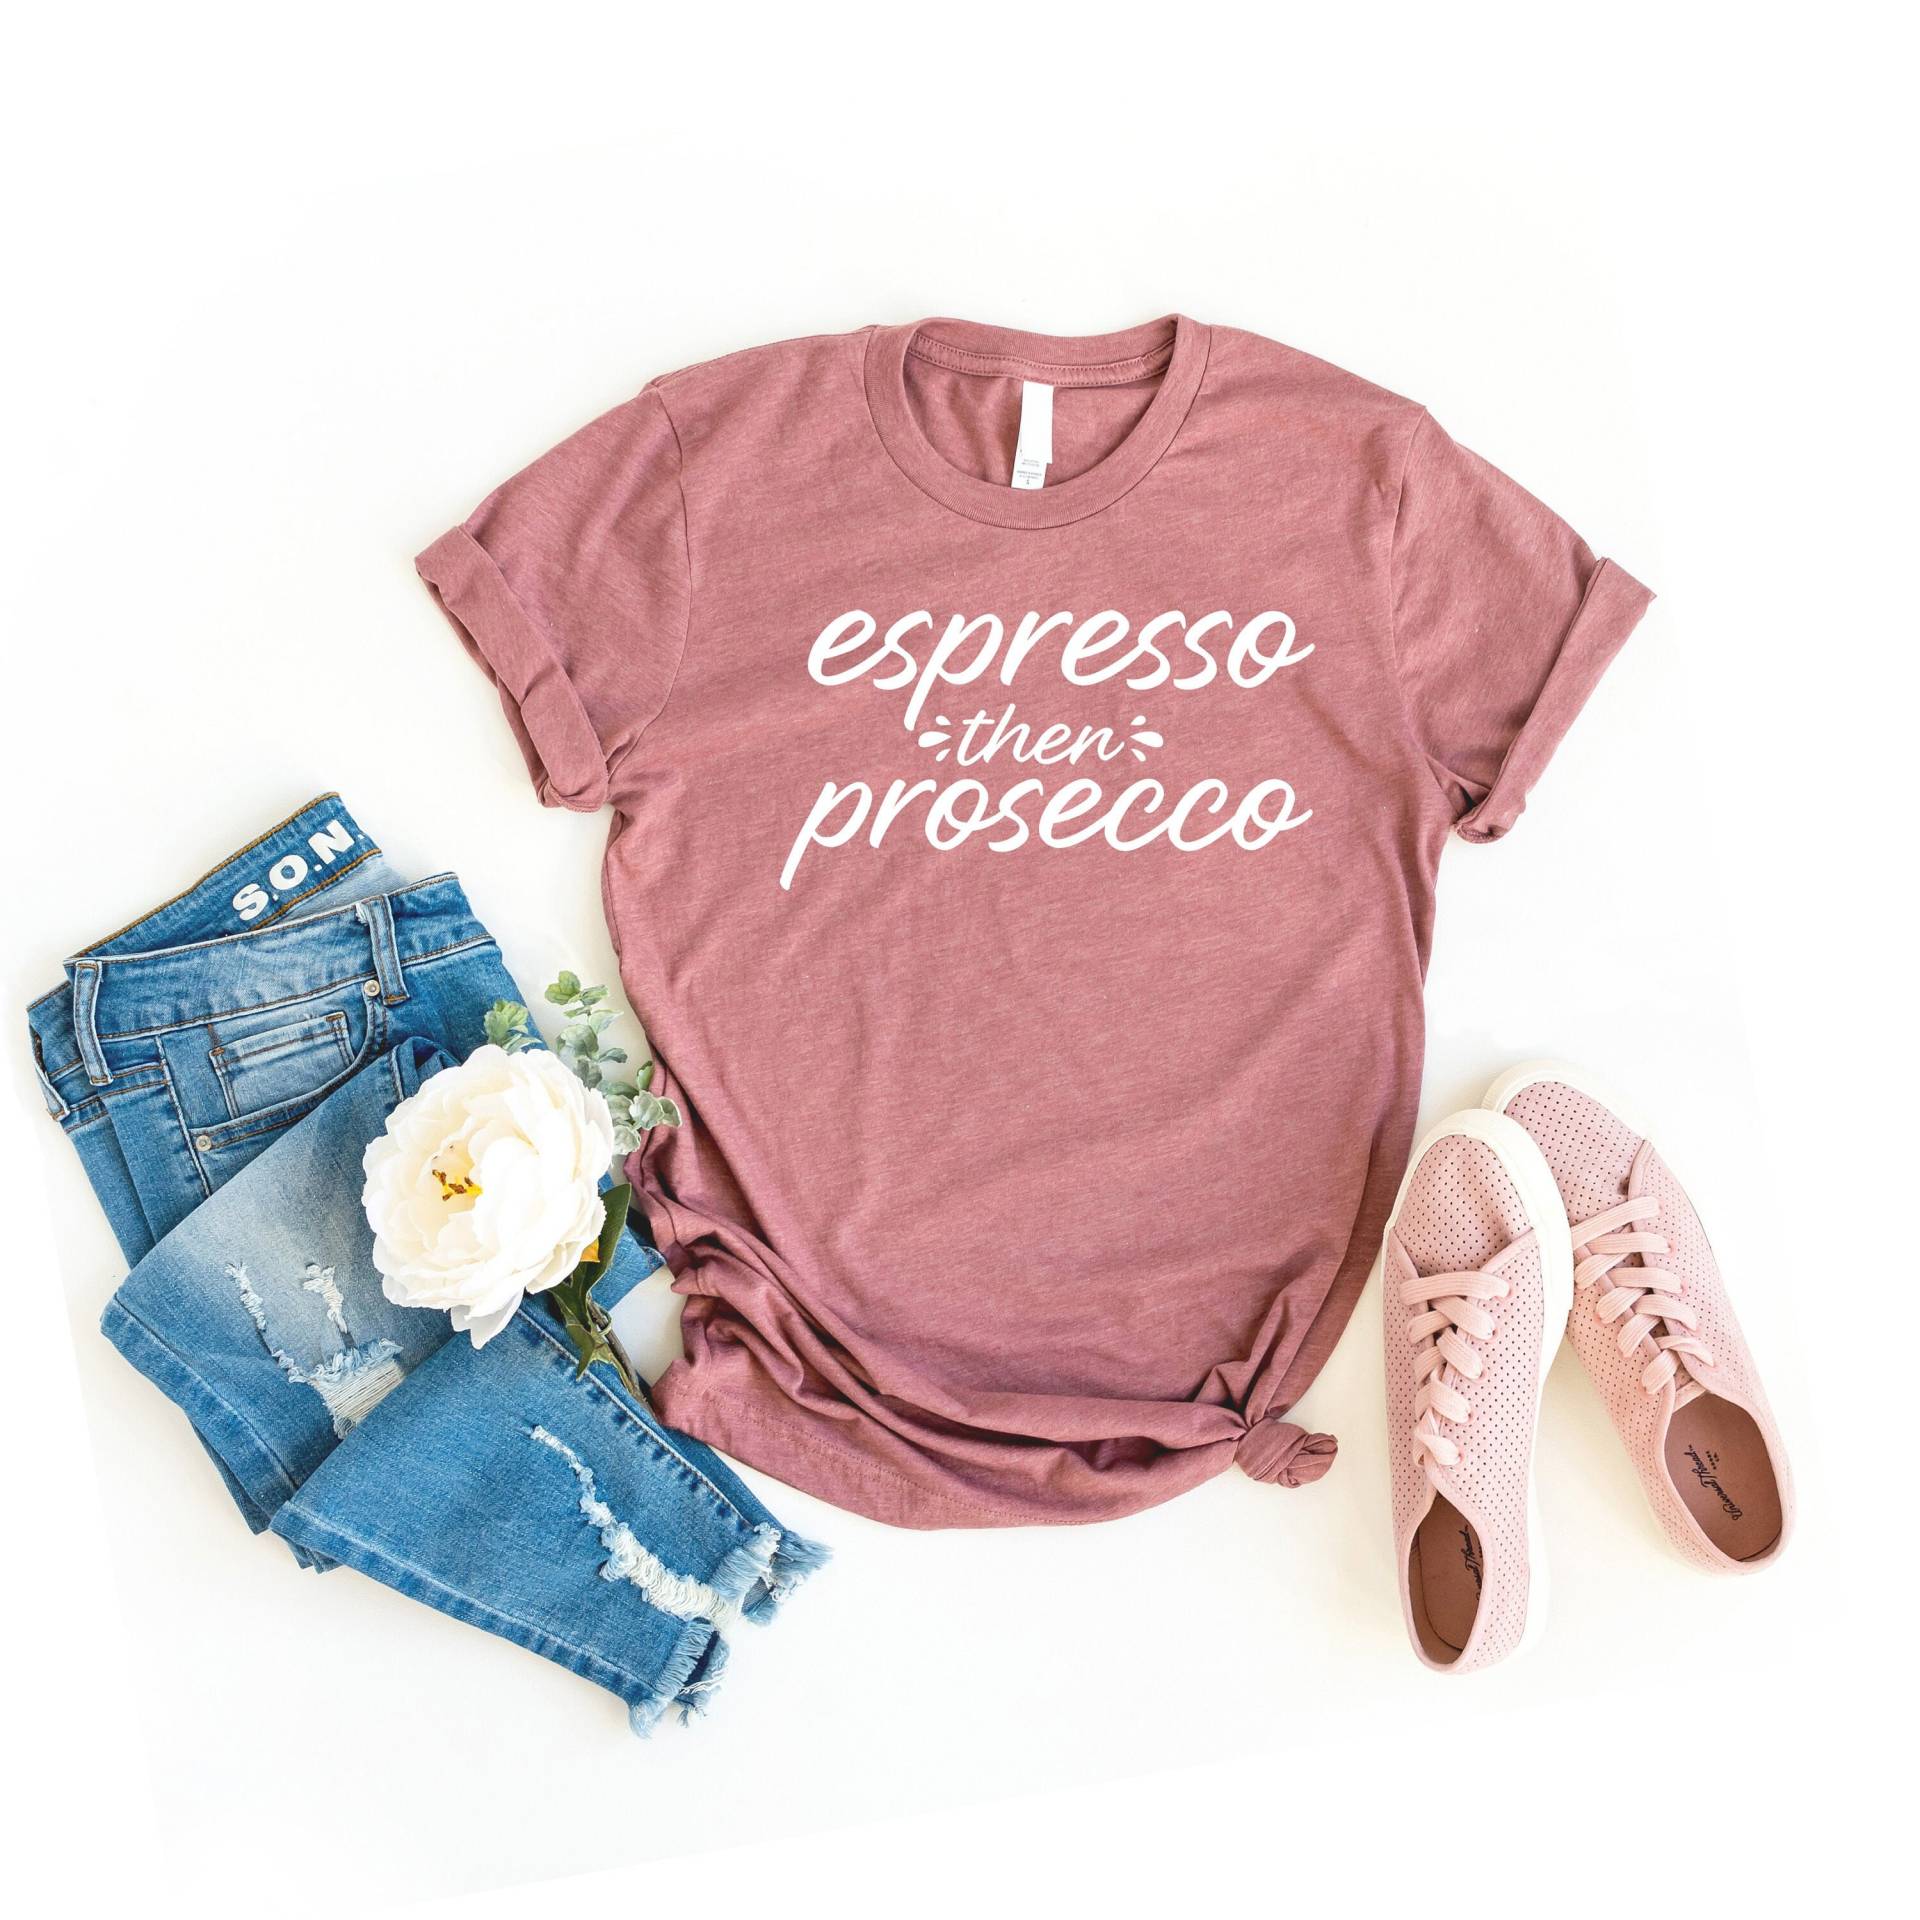 Espresso Dann Prosecco Shirt, Dann, Prosecco von SimplyTraded